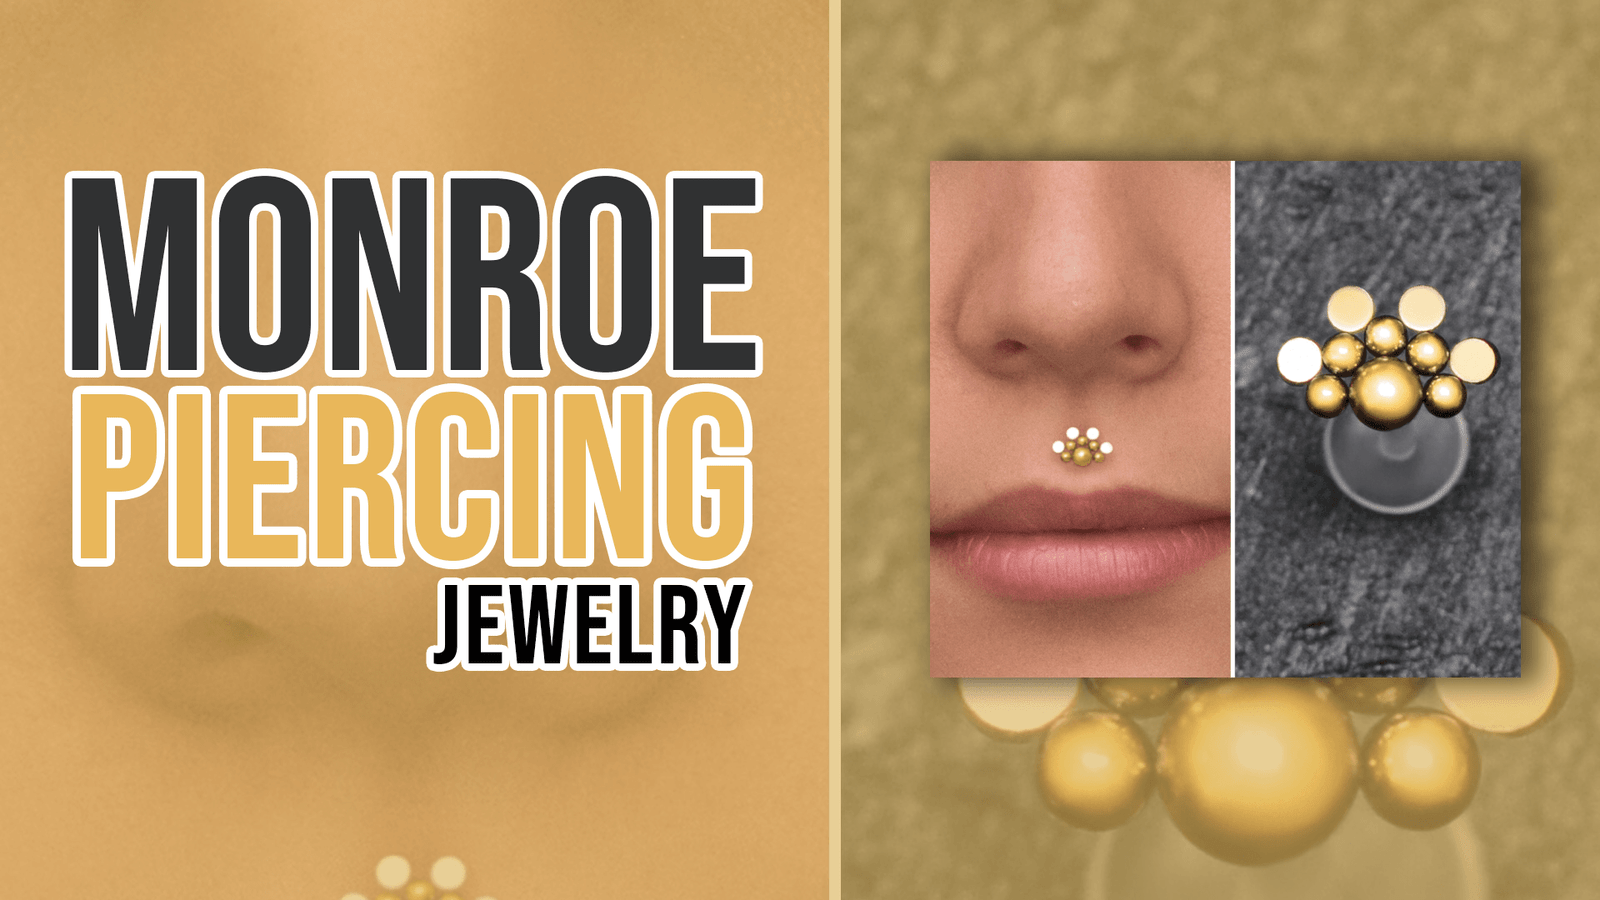 Monroe Piercing Jewelry